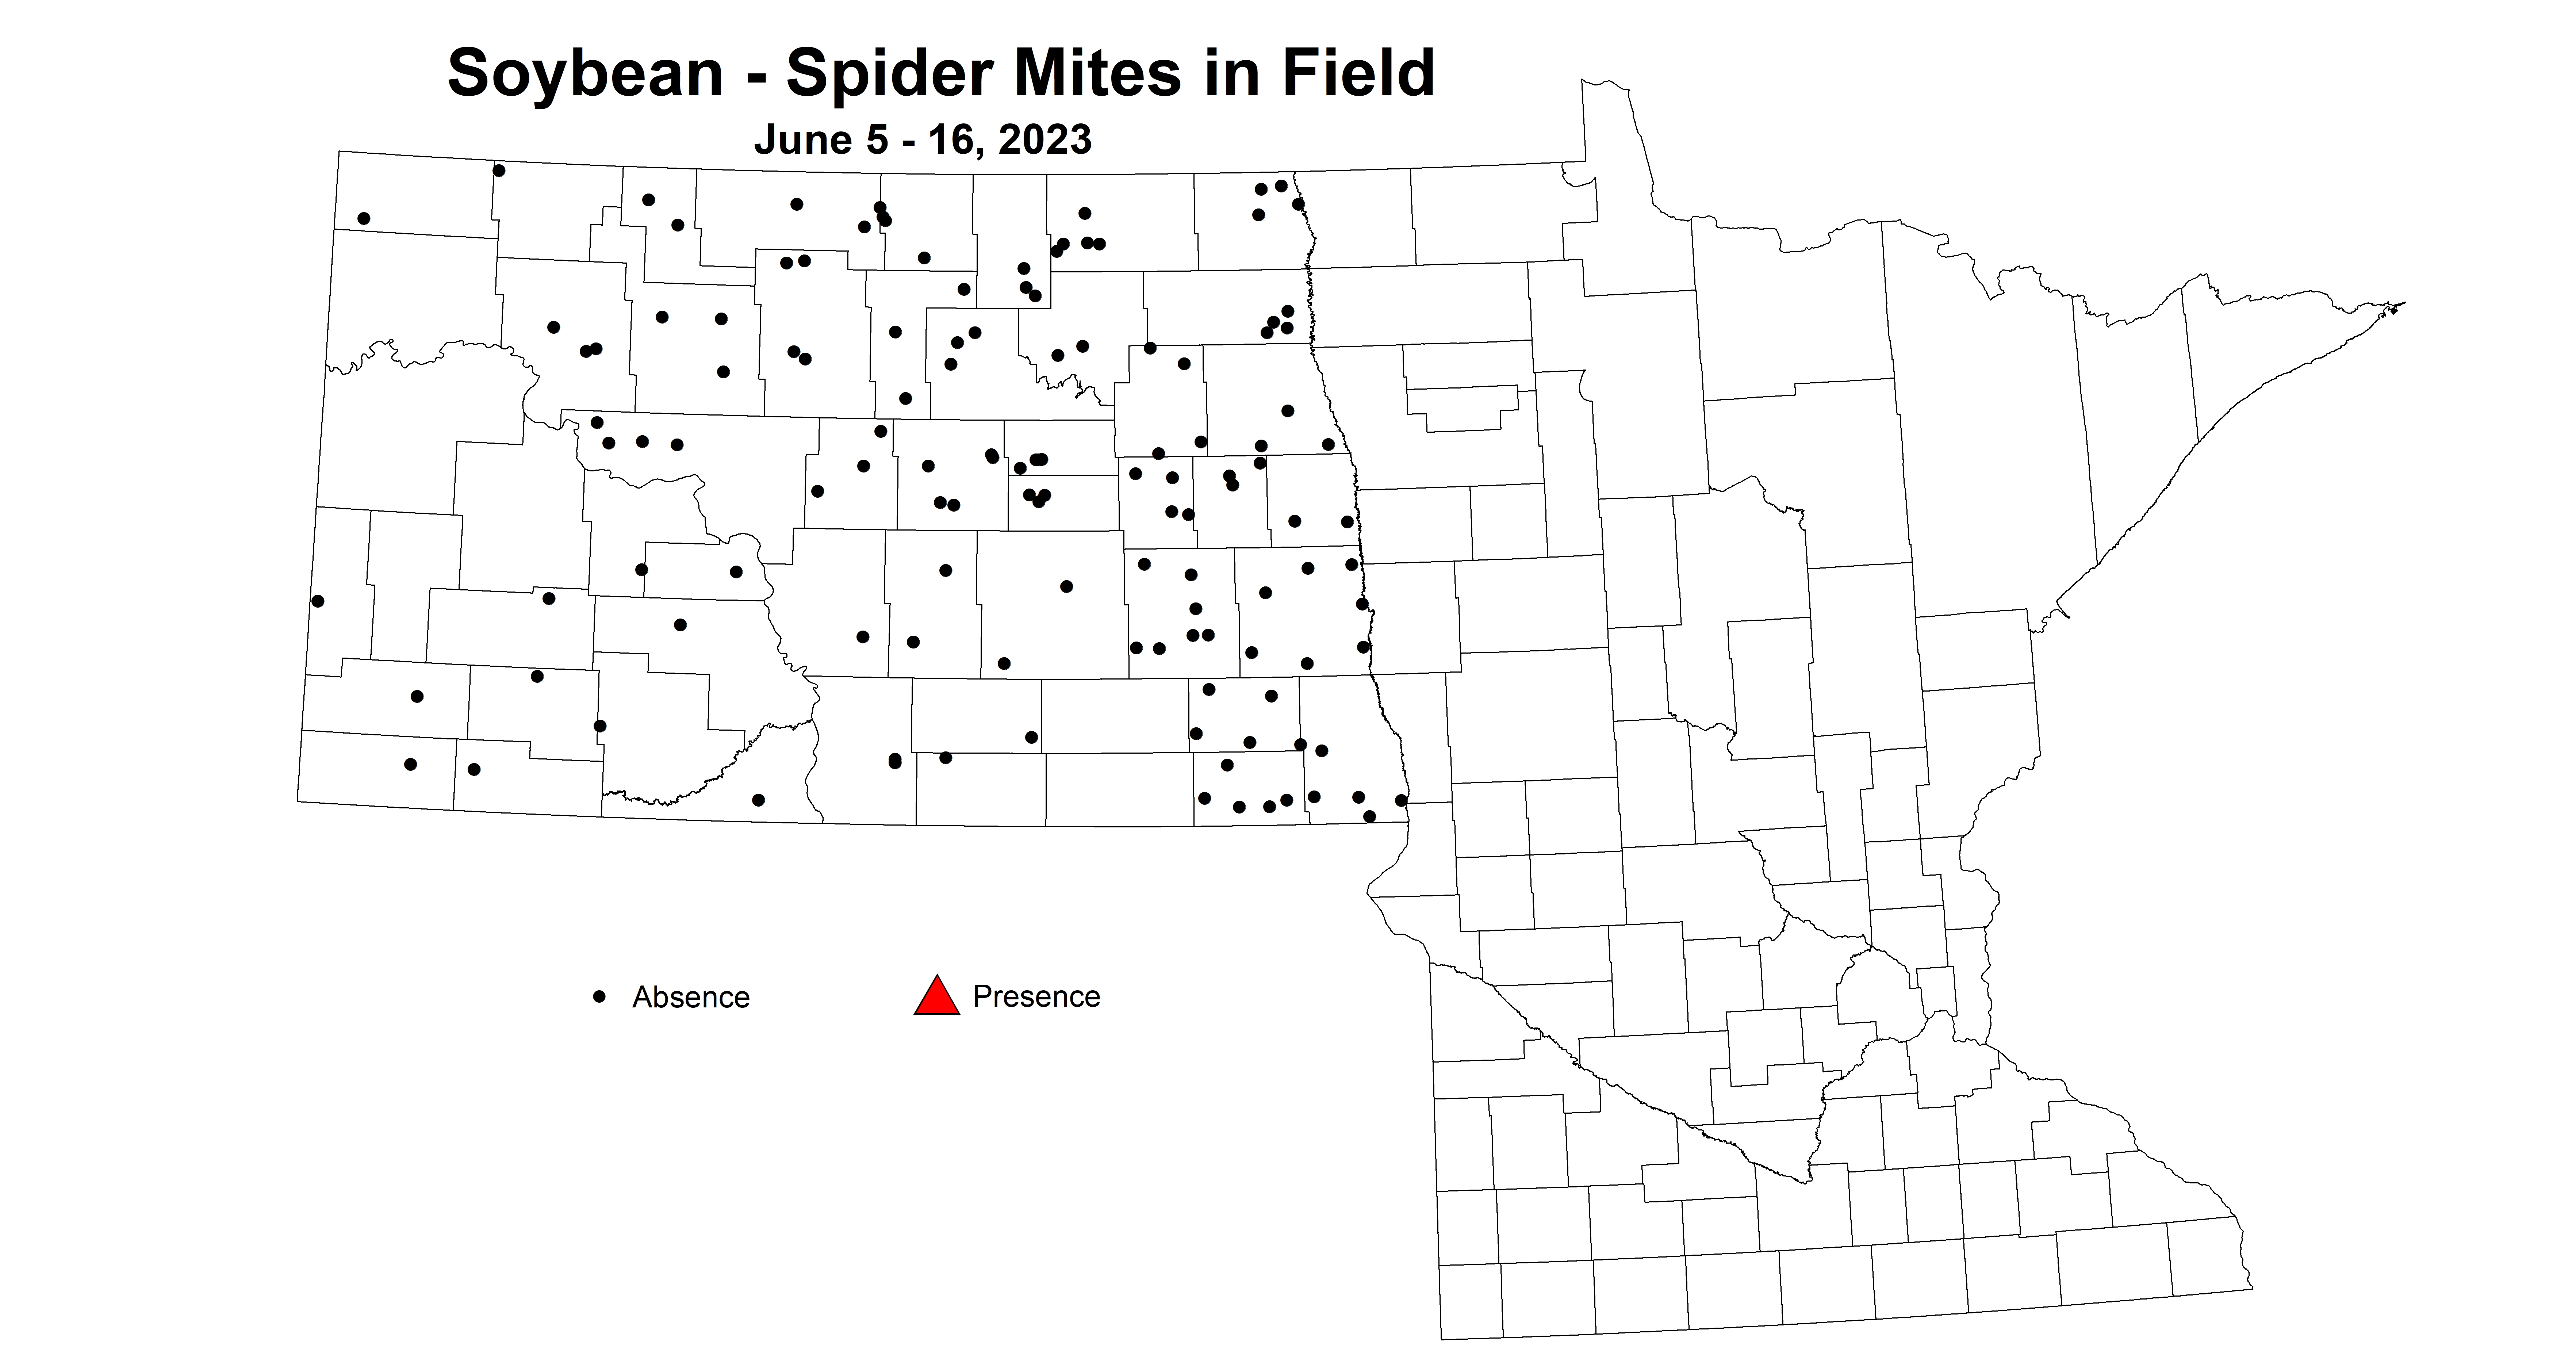 soybean spider mites in field June 5-16 2023